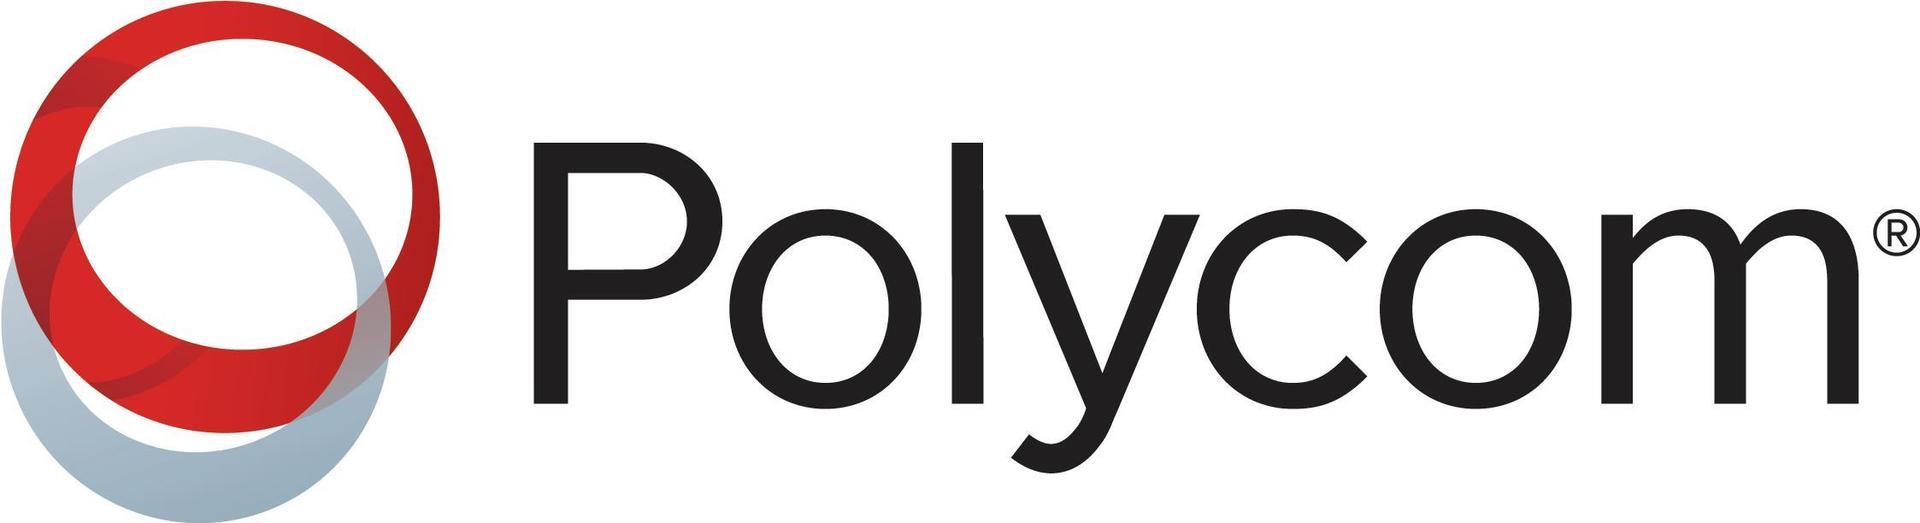 Polycom Premier - Serviceerweiterung - Vorabaustausch defekter Komponenten - 1 Jahr - Lieferung - Reaktionszeit: am nächsten Arbeitstag - für VBP 4555-E3